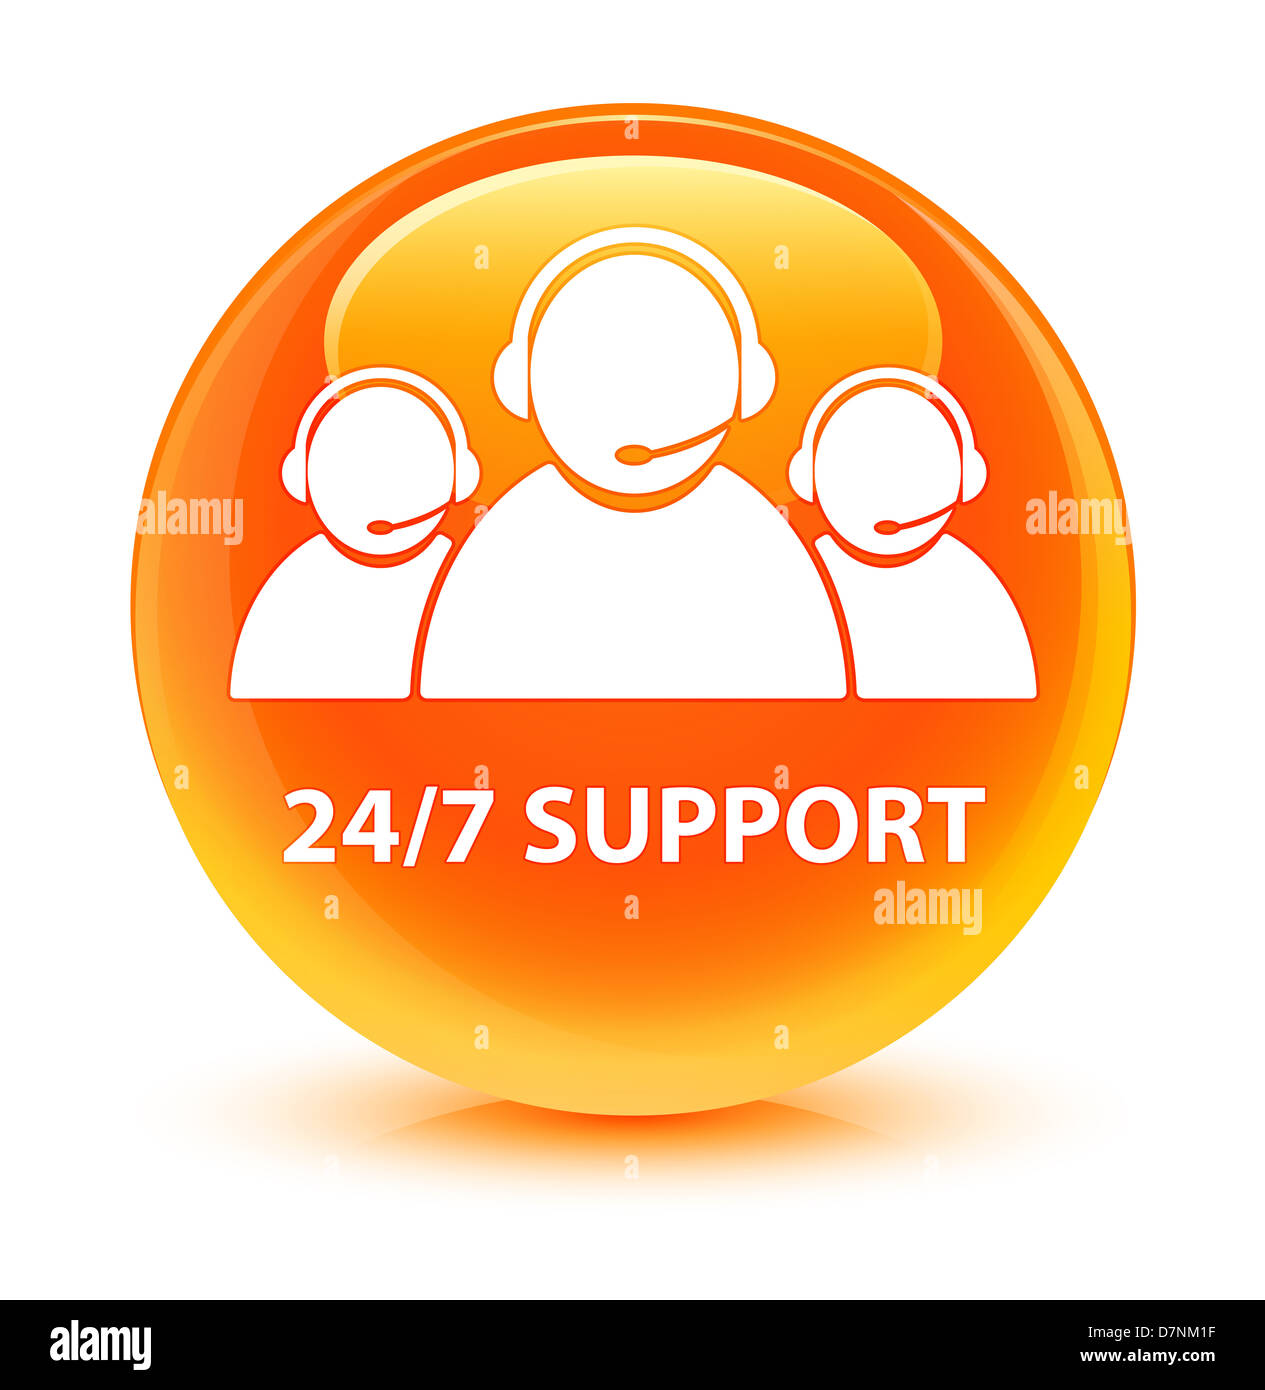 24/7 Support (customer care team) icon glassy orange button Stock Photo